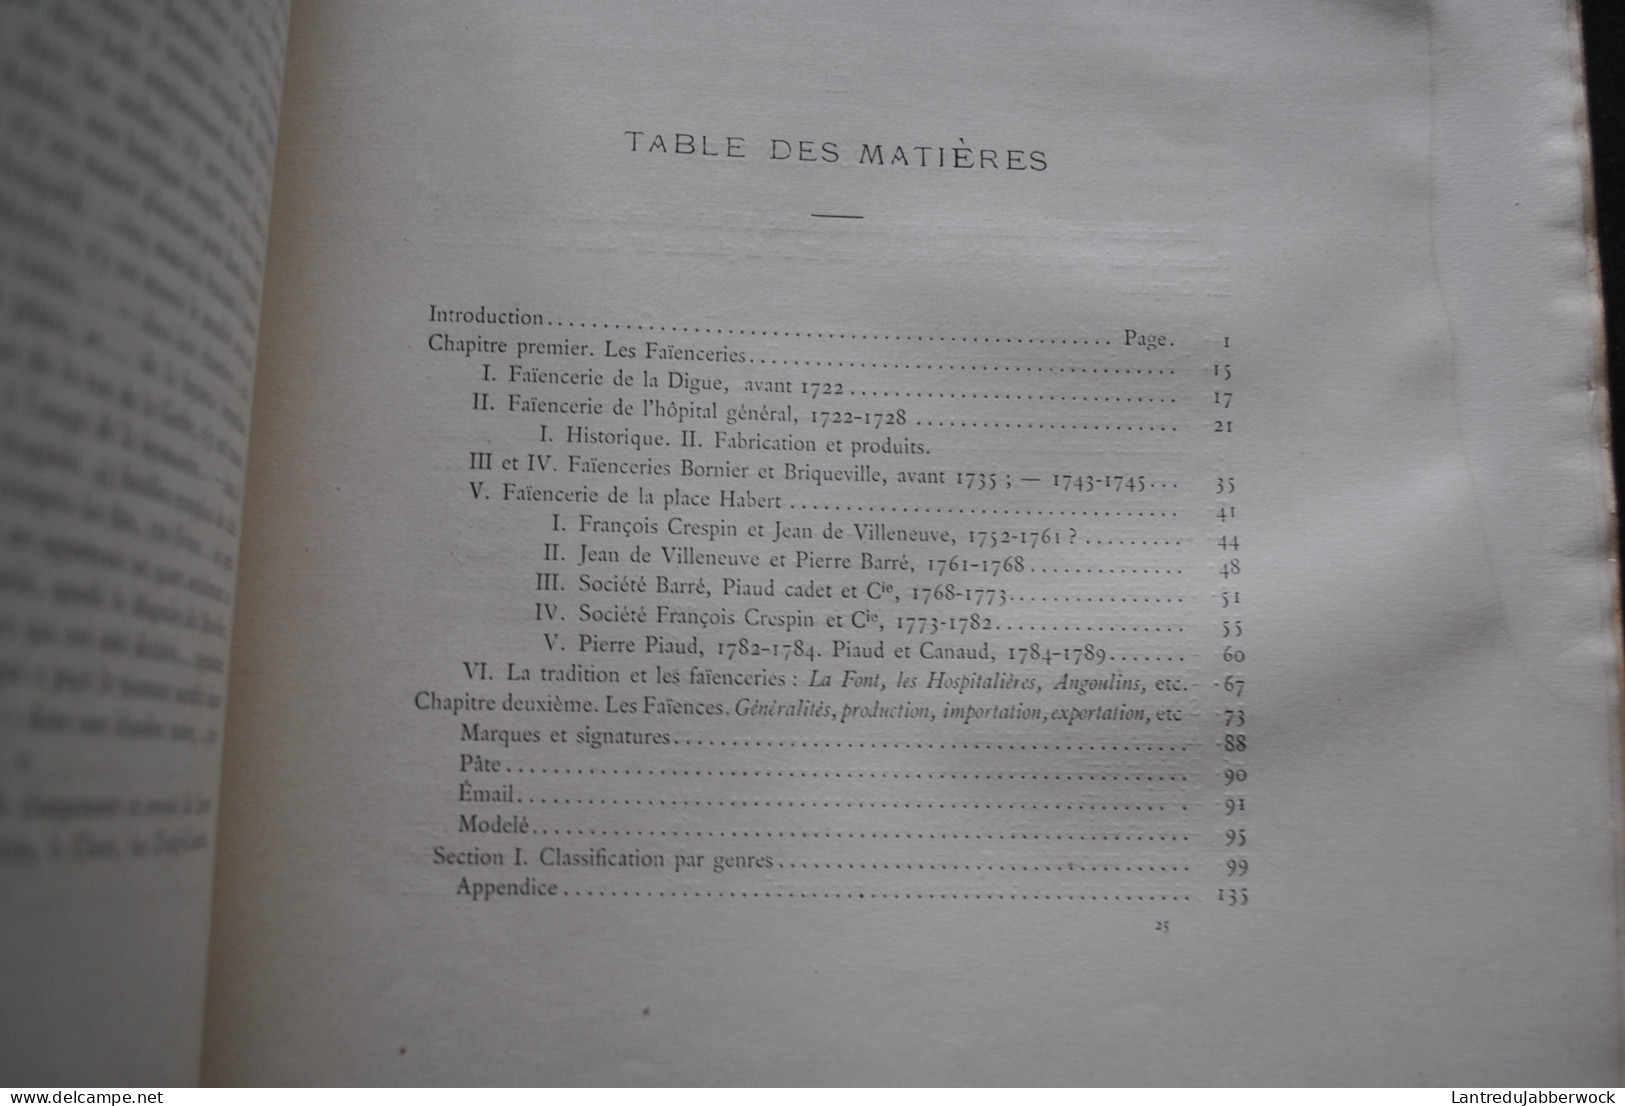 Georges MUSSET Les faïenceries rochelaises La Rochelle Chez l'auteur 1888 + complet des 20 planches couleurs Faïencier